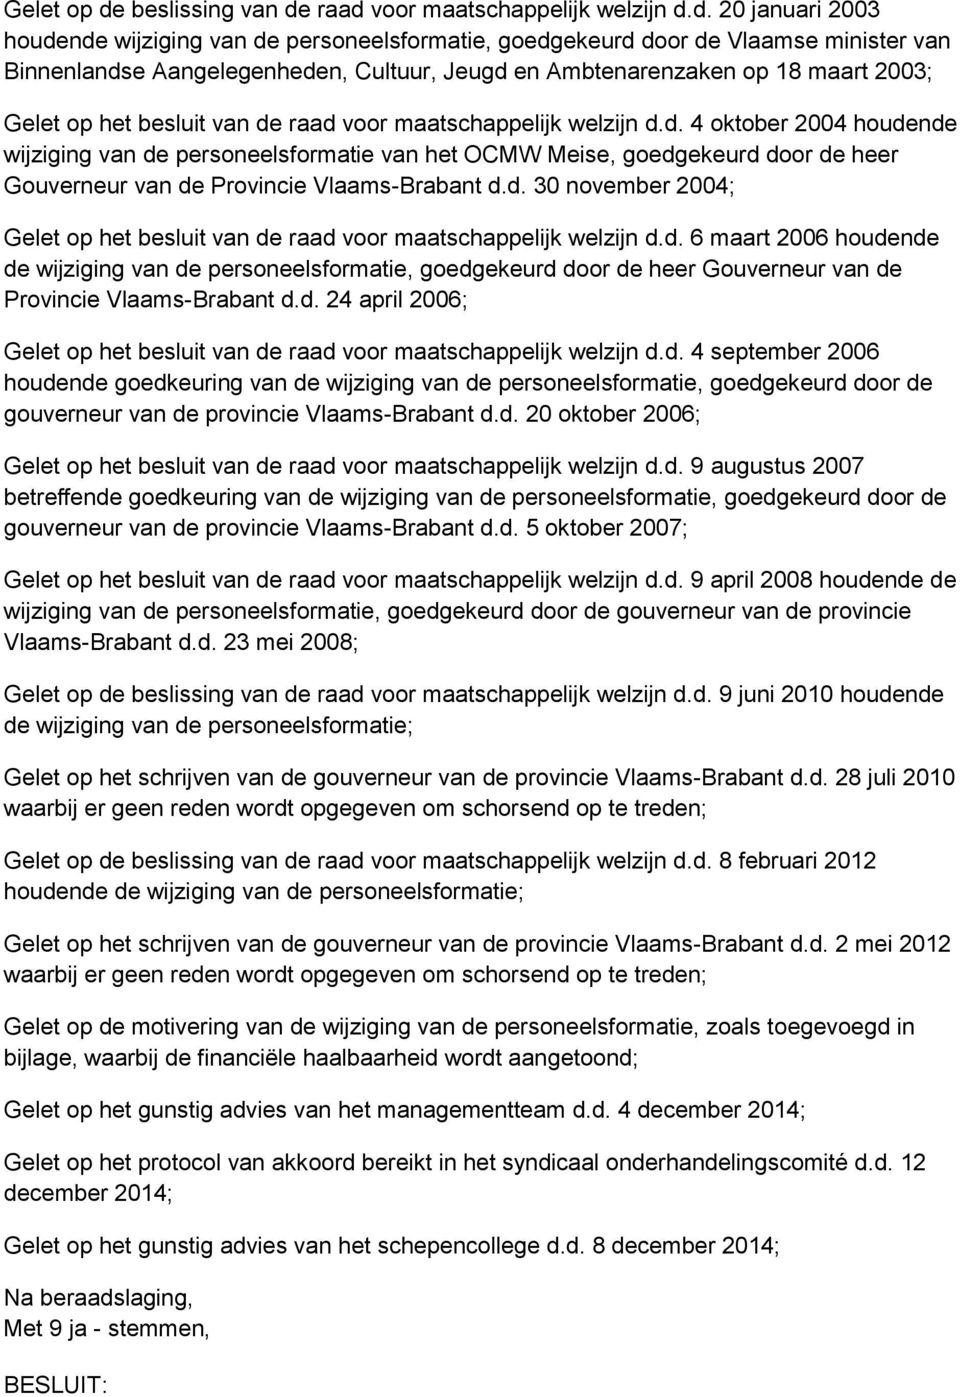 raad voor maatschappelijk welzijn d.d. 20 januari 2003 houdende wijziging van de personeelsformatie, goedgekeurd door de Vlaamse minister van Binnenlandse Aangelegenheden, Cultuur, Jeugd en